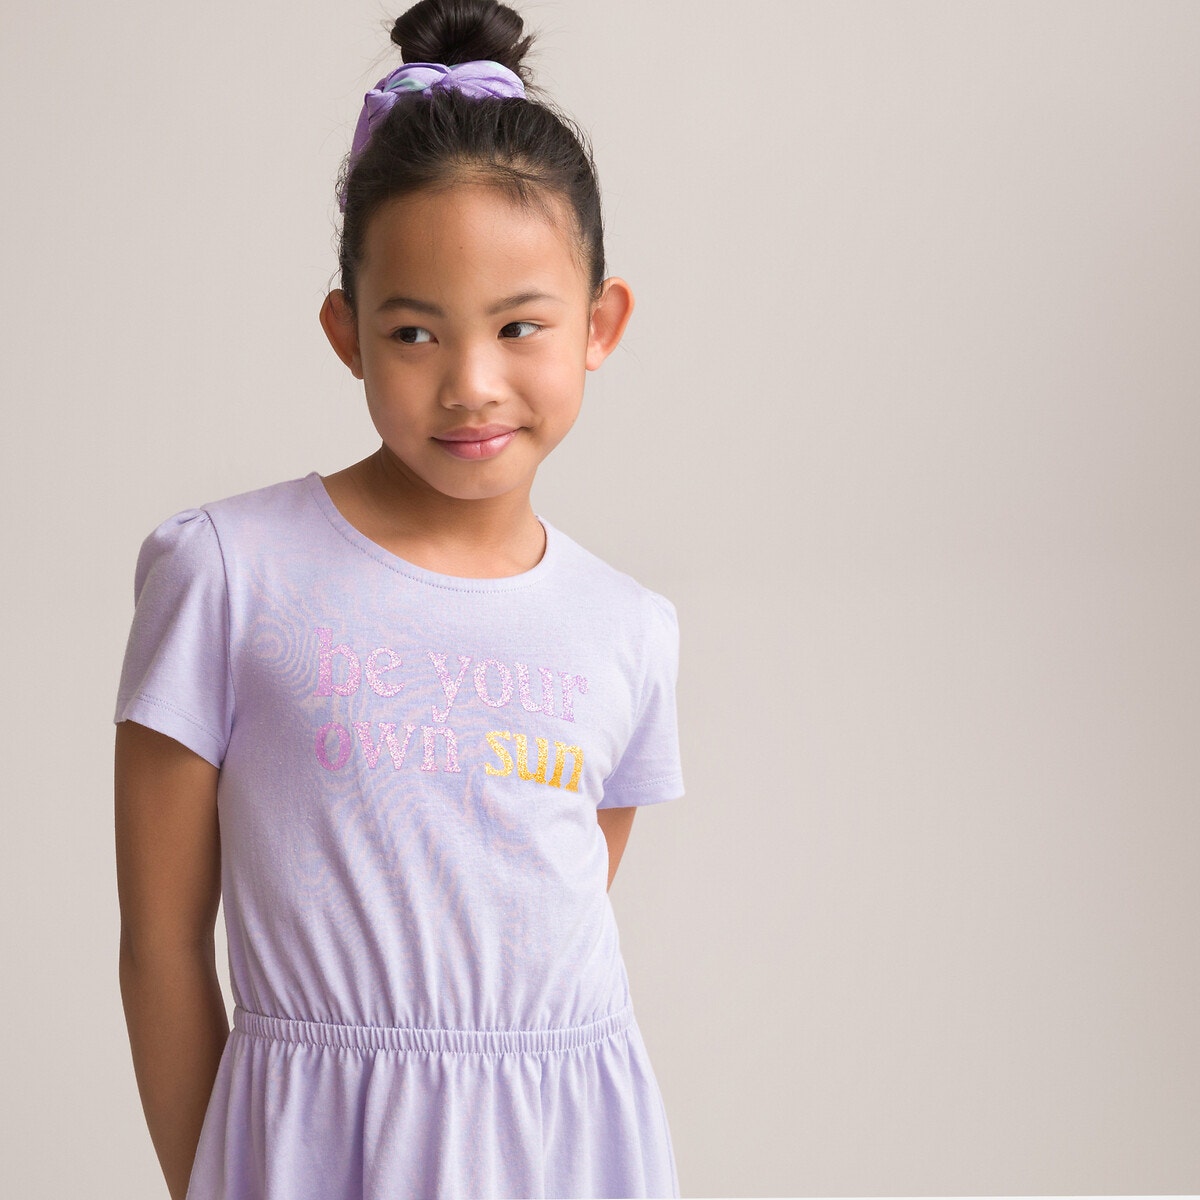 ΠΑΙΔΙ | Φορέματα | Κοντά μανίκια Κοντομάνικο φόρεμα από οργανικό βαμβάκι με μήνυμα, 3-12 ετών